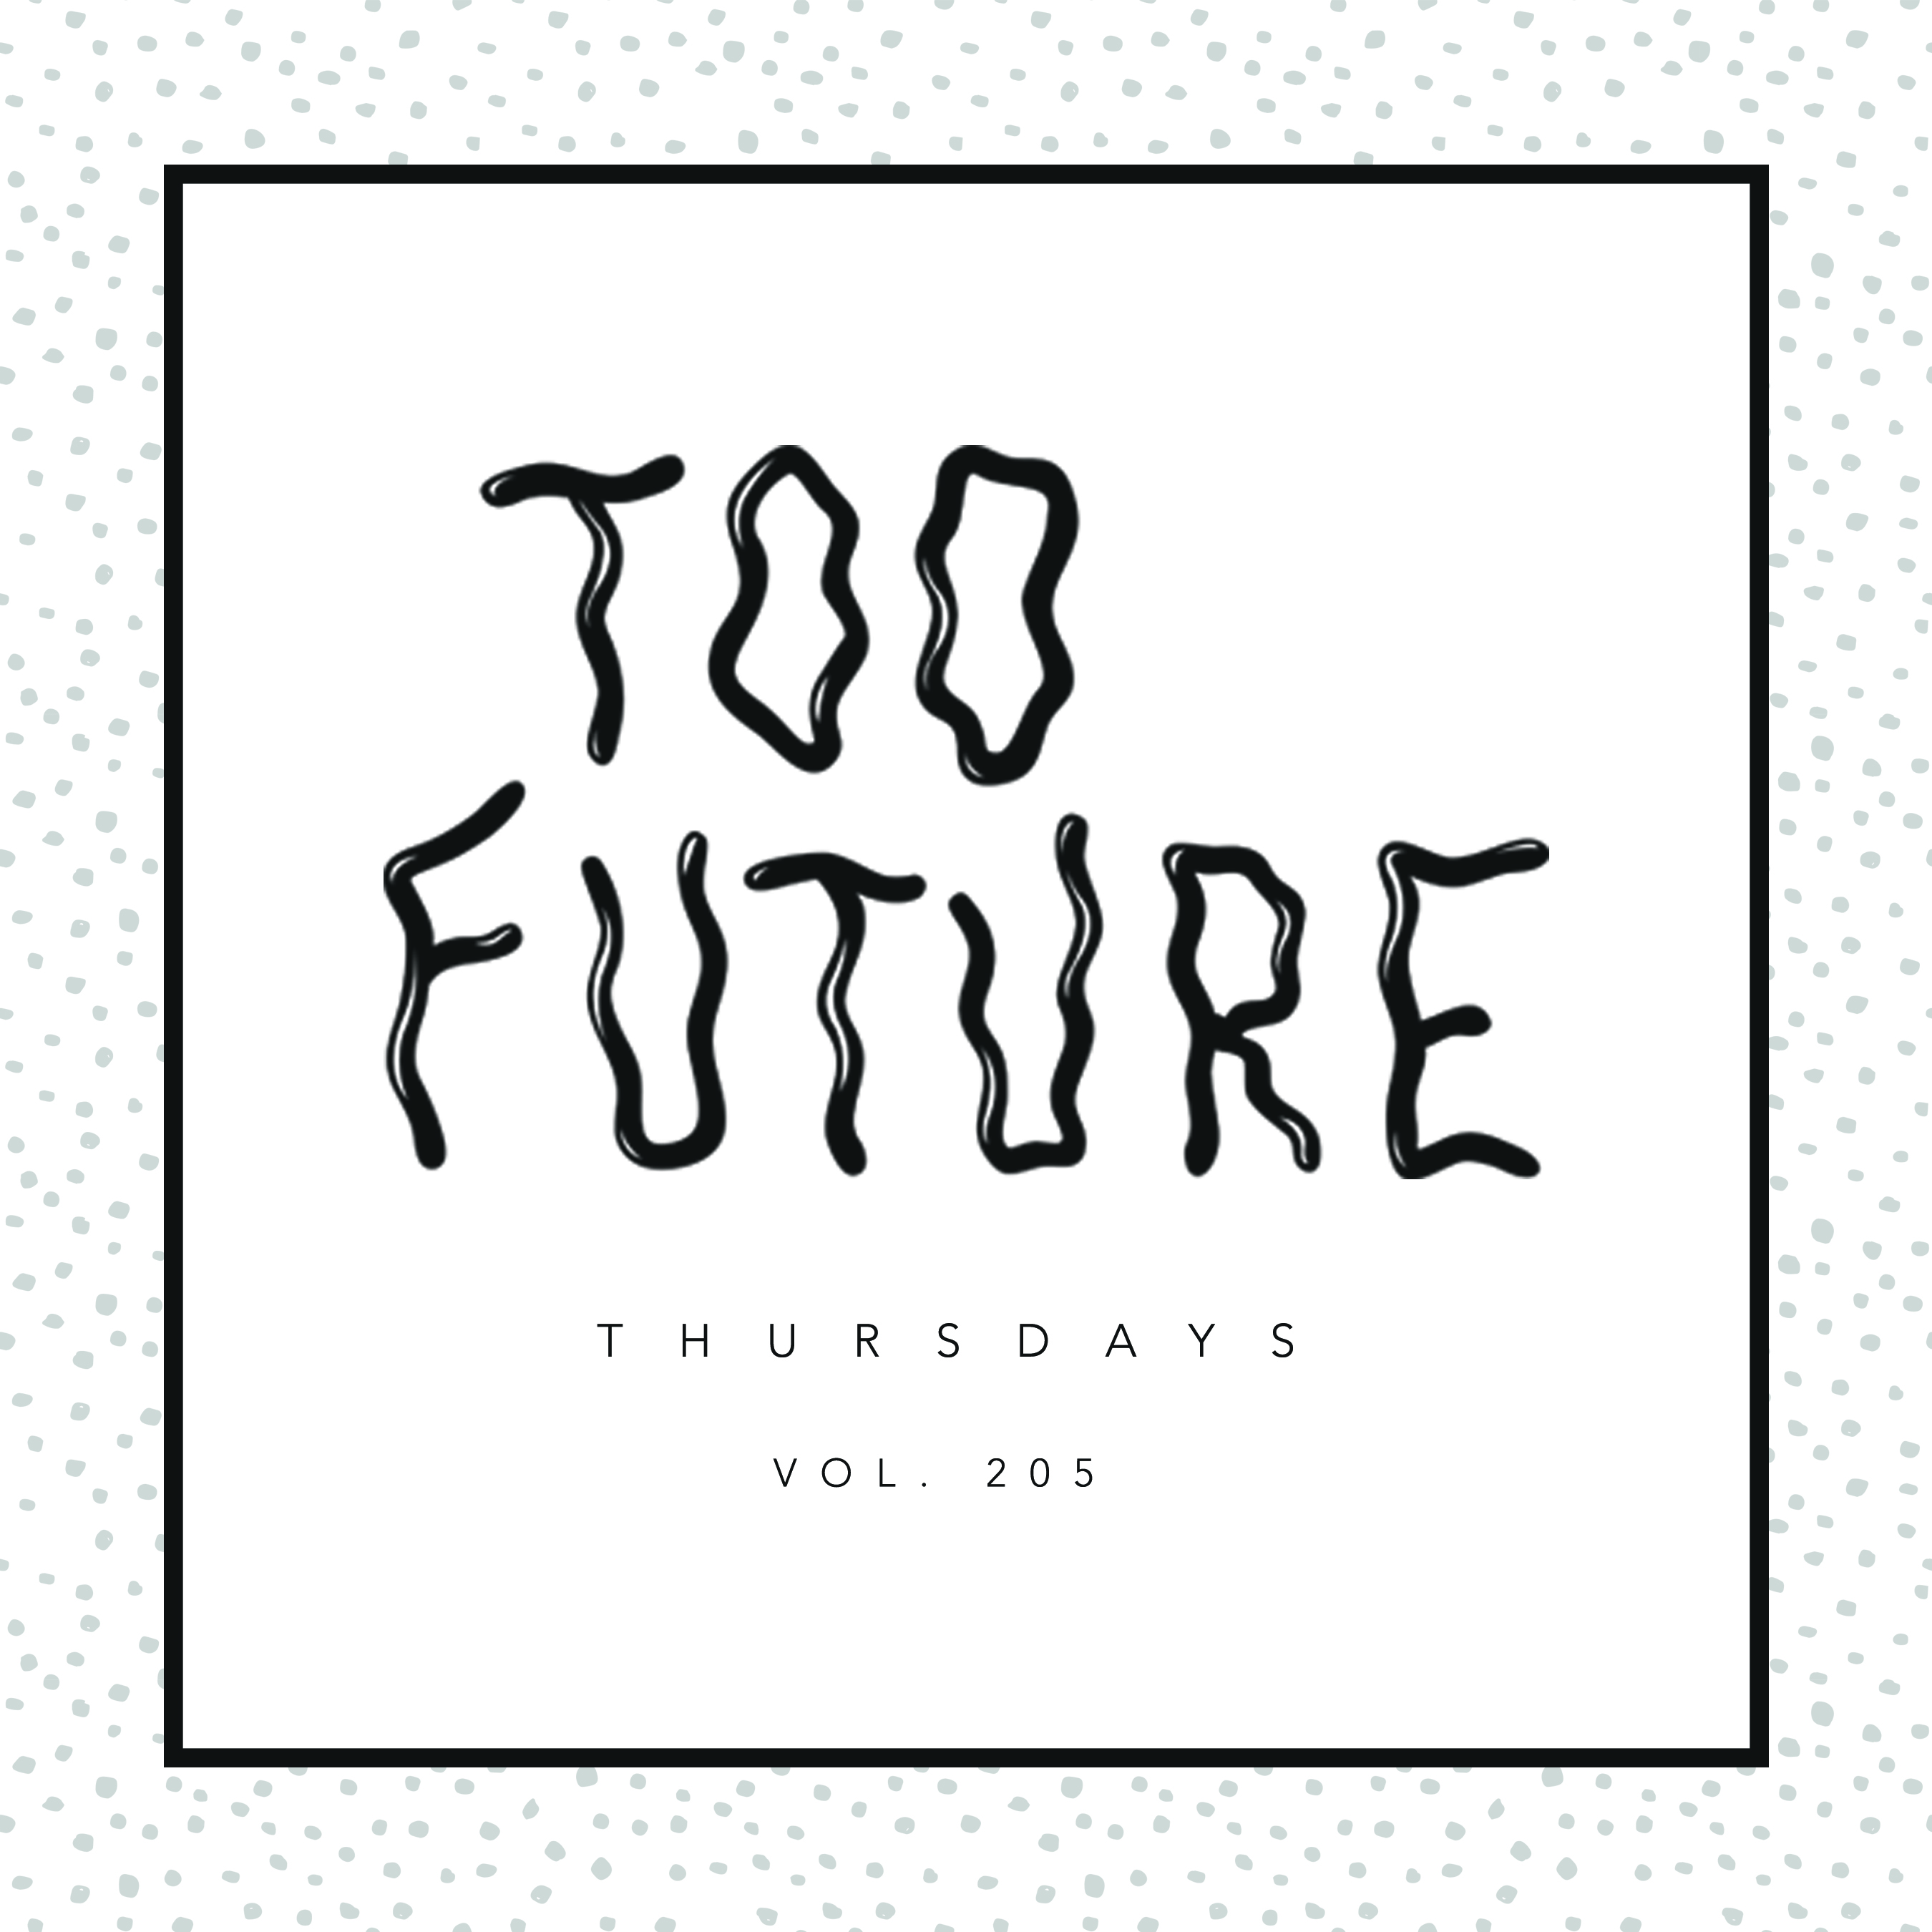 too-future-thursdays-vol-205